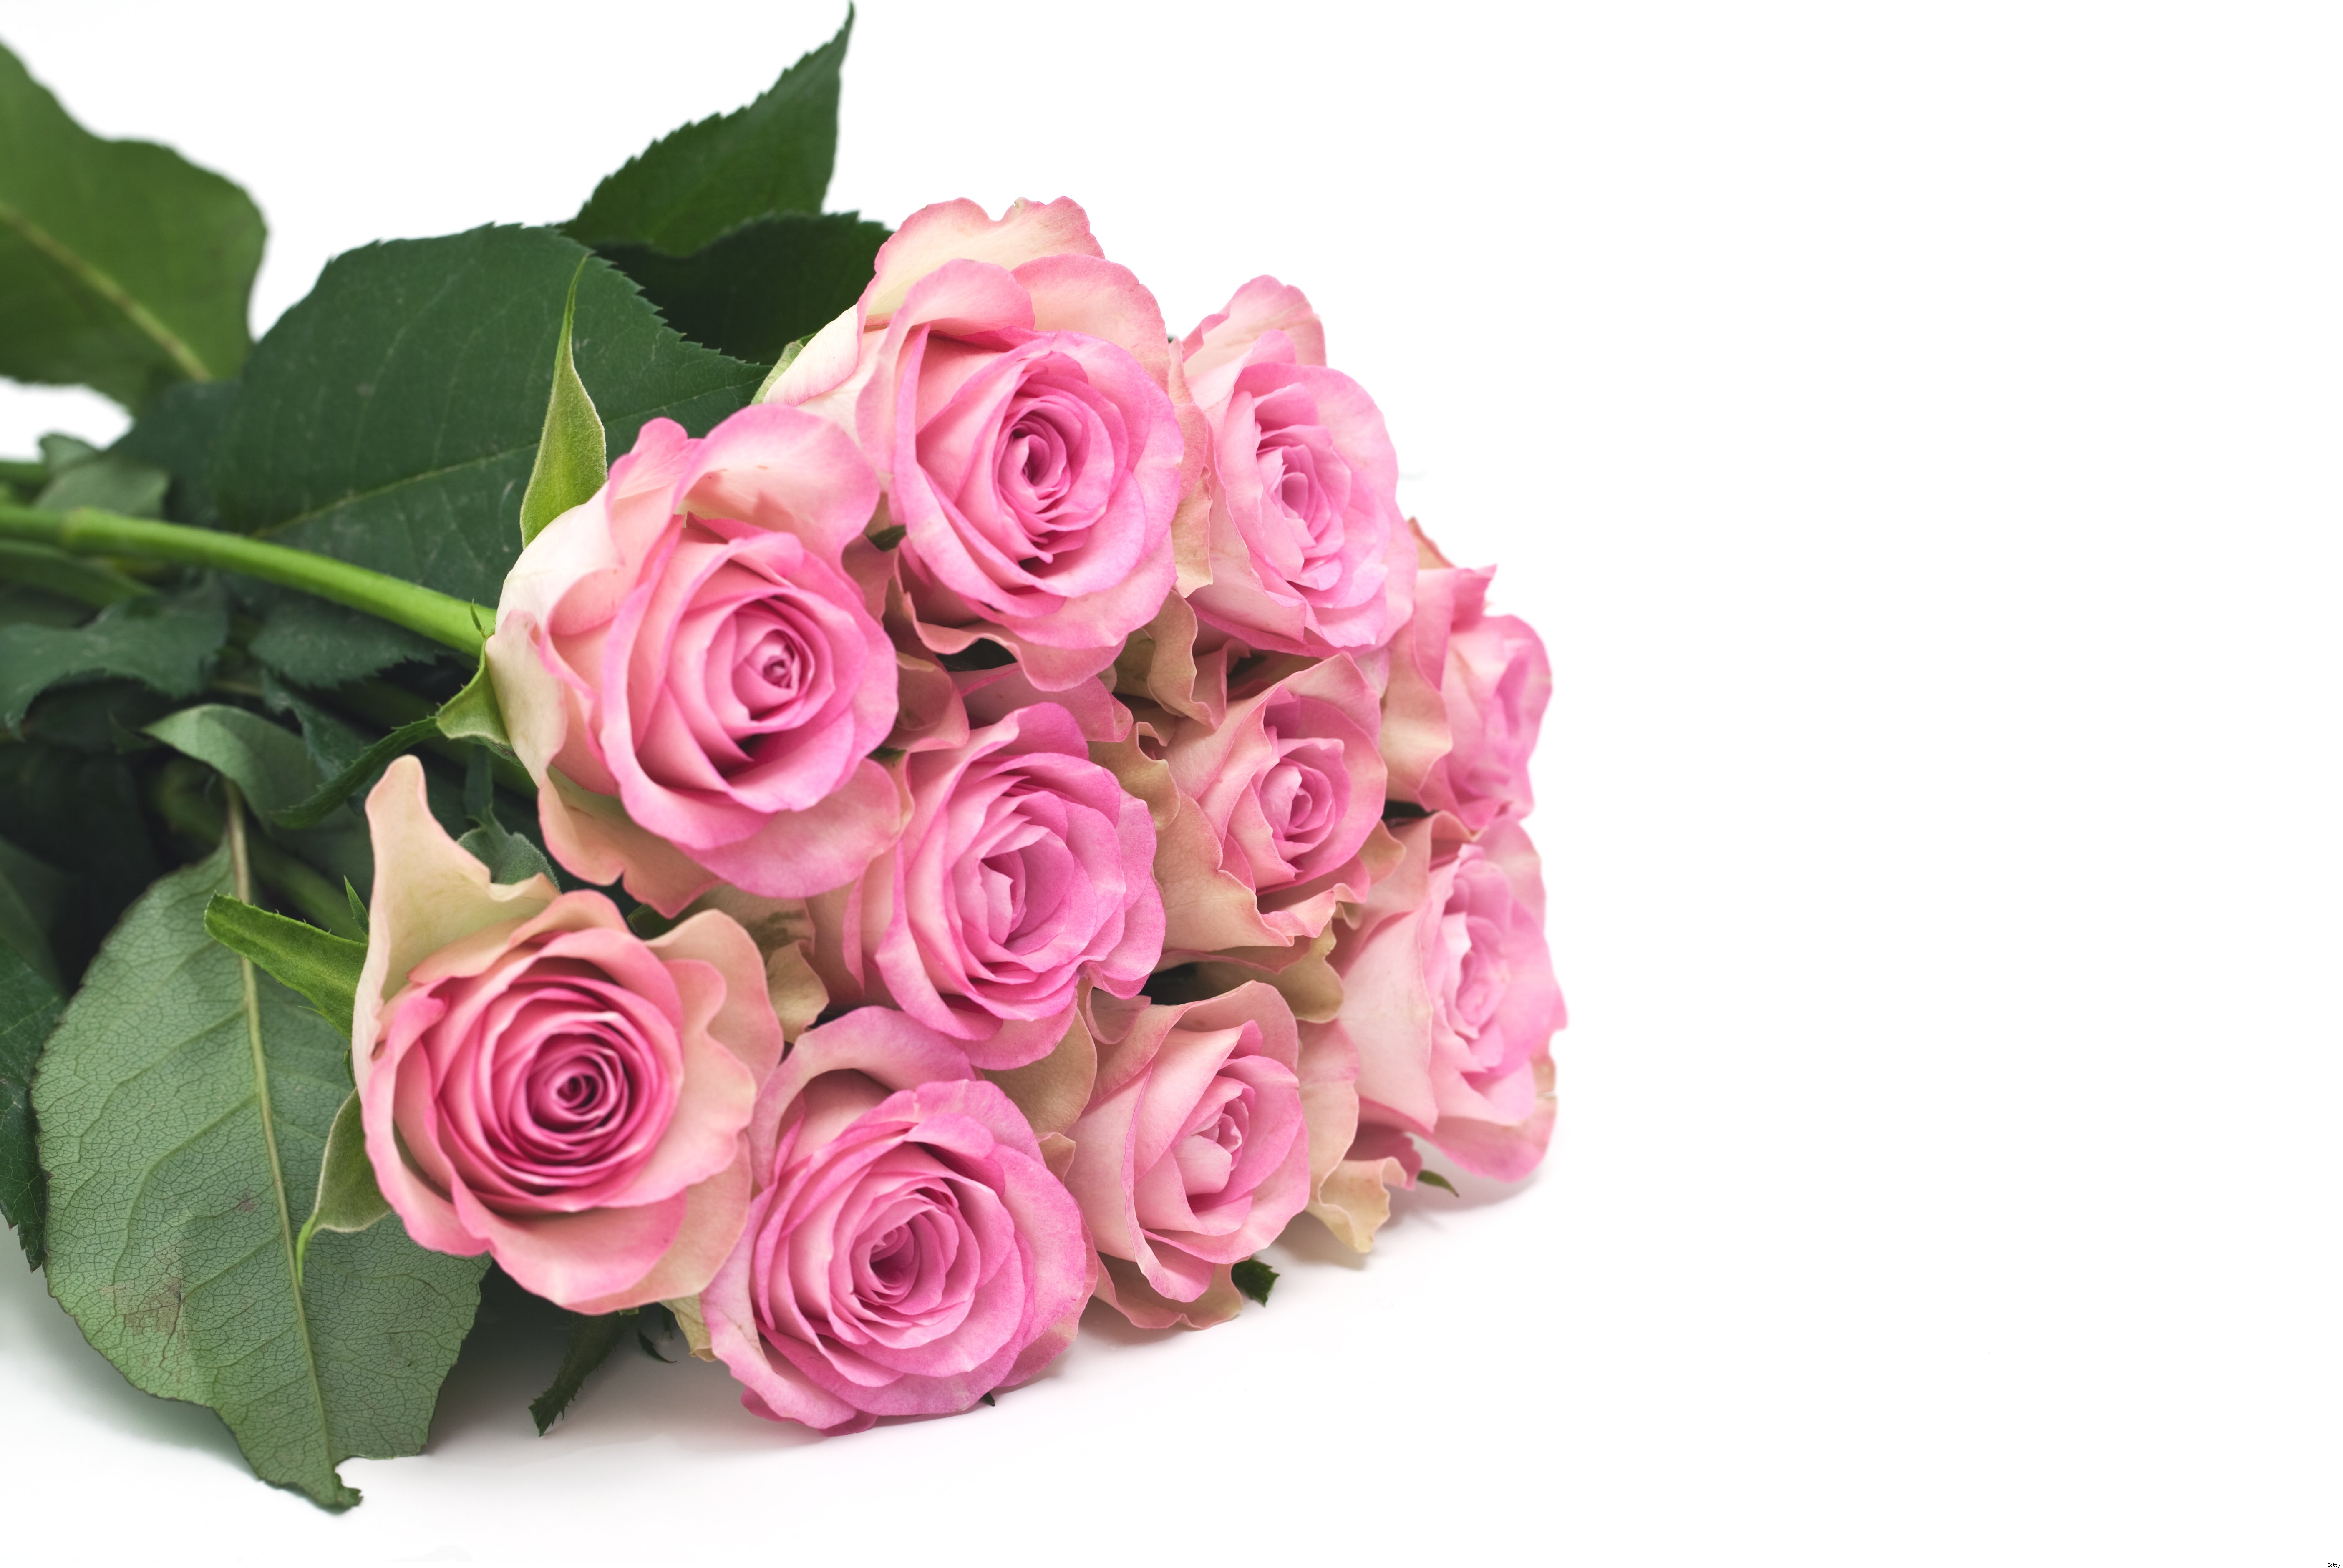 Мамины цветочки слова. Букет розовых роз. Поздравляю! (Цветок). С днем матери цветы. Открытка цветы.